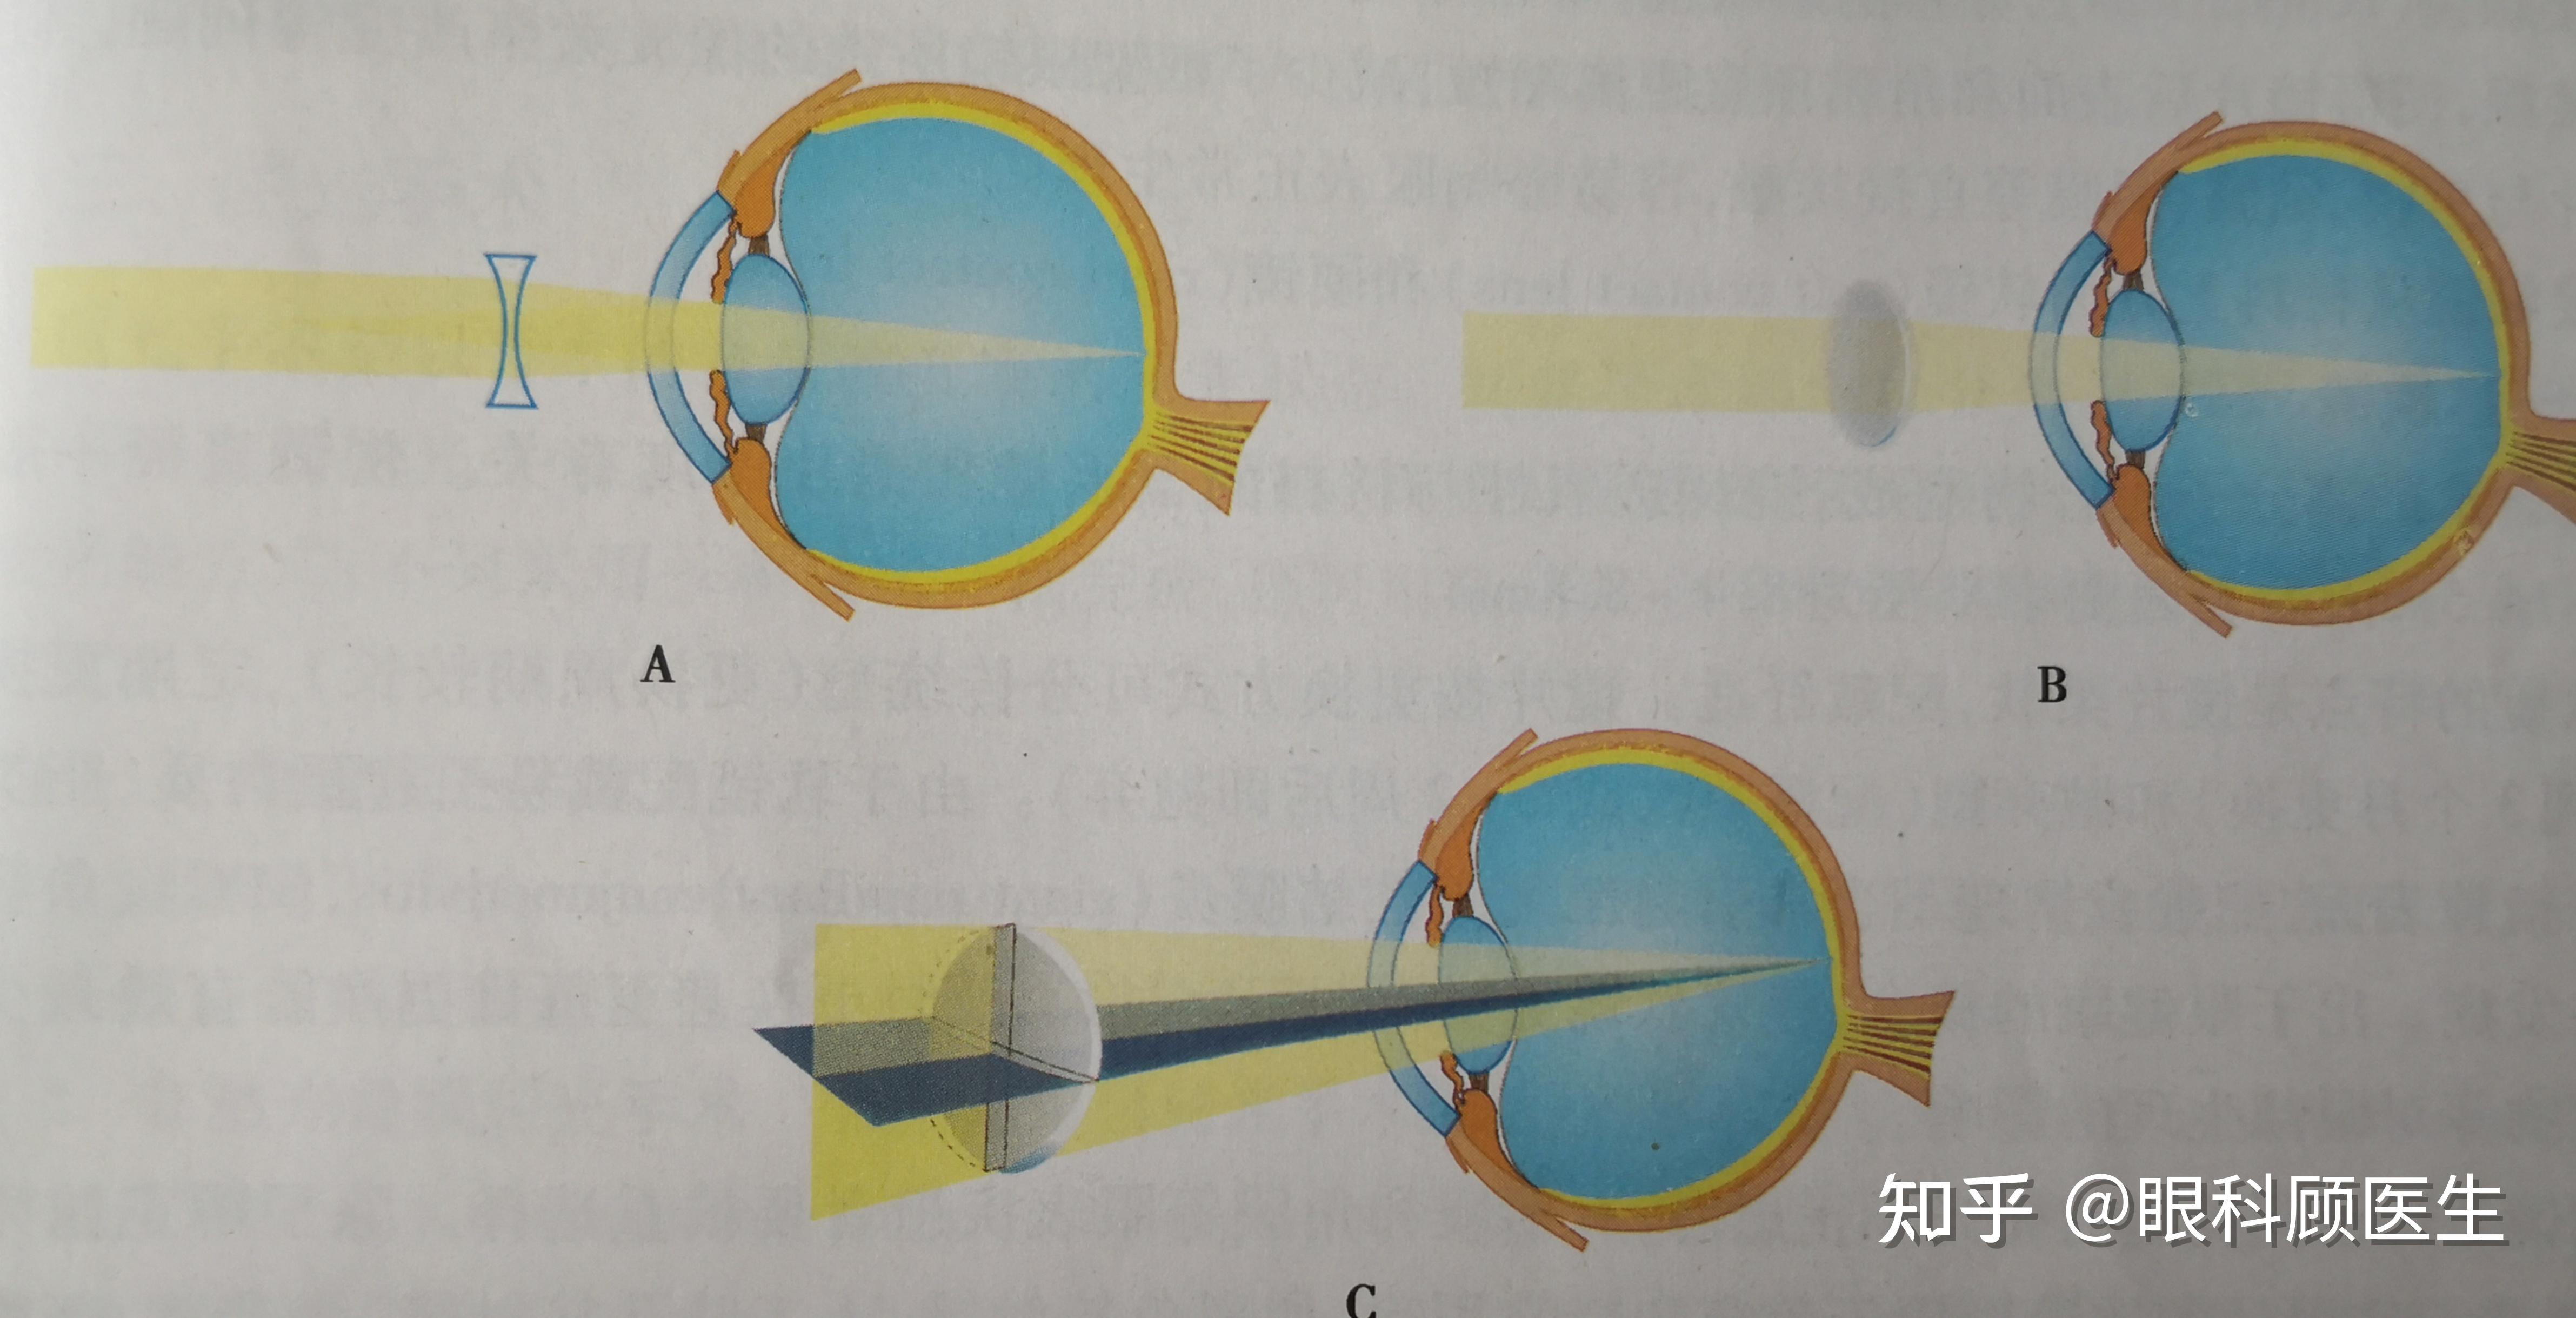 框架眼镜的球镜用于矫正球性屈光不正,即正球镜用于矫正单纯远视,负球